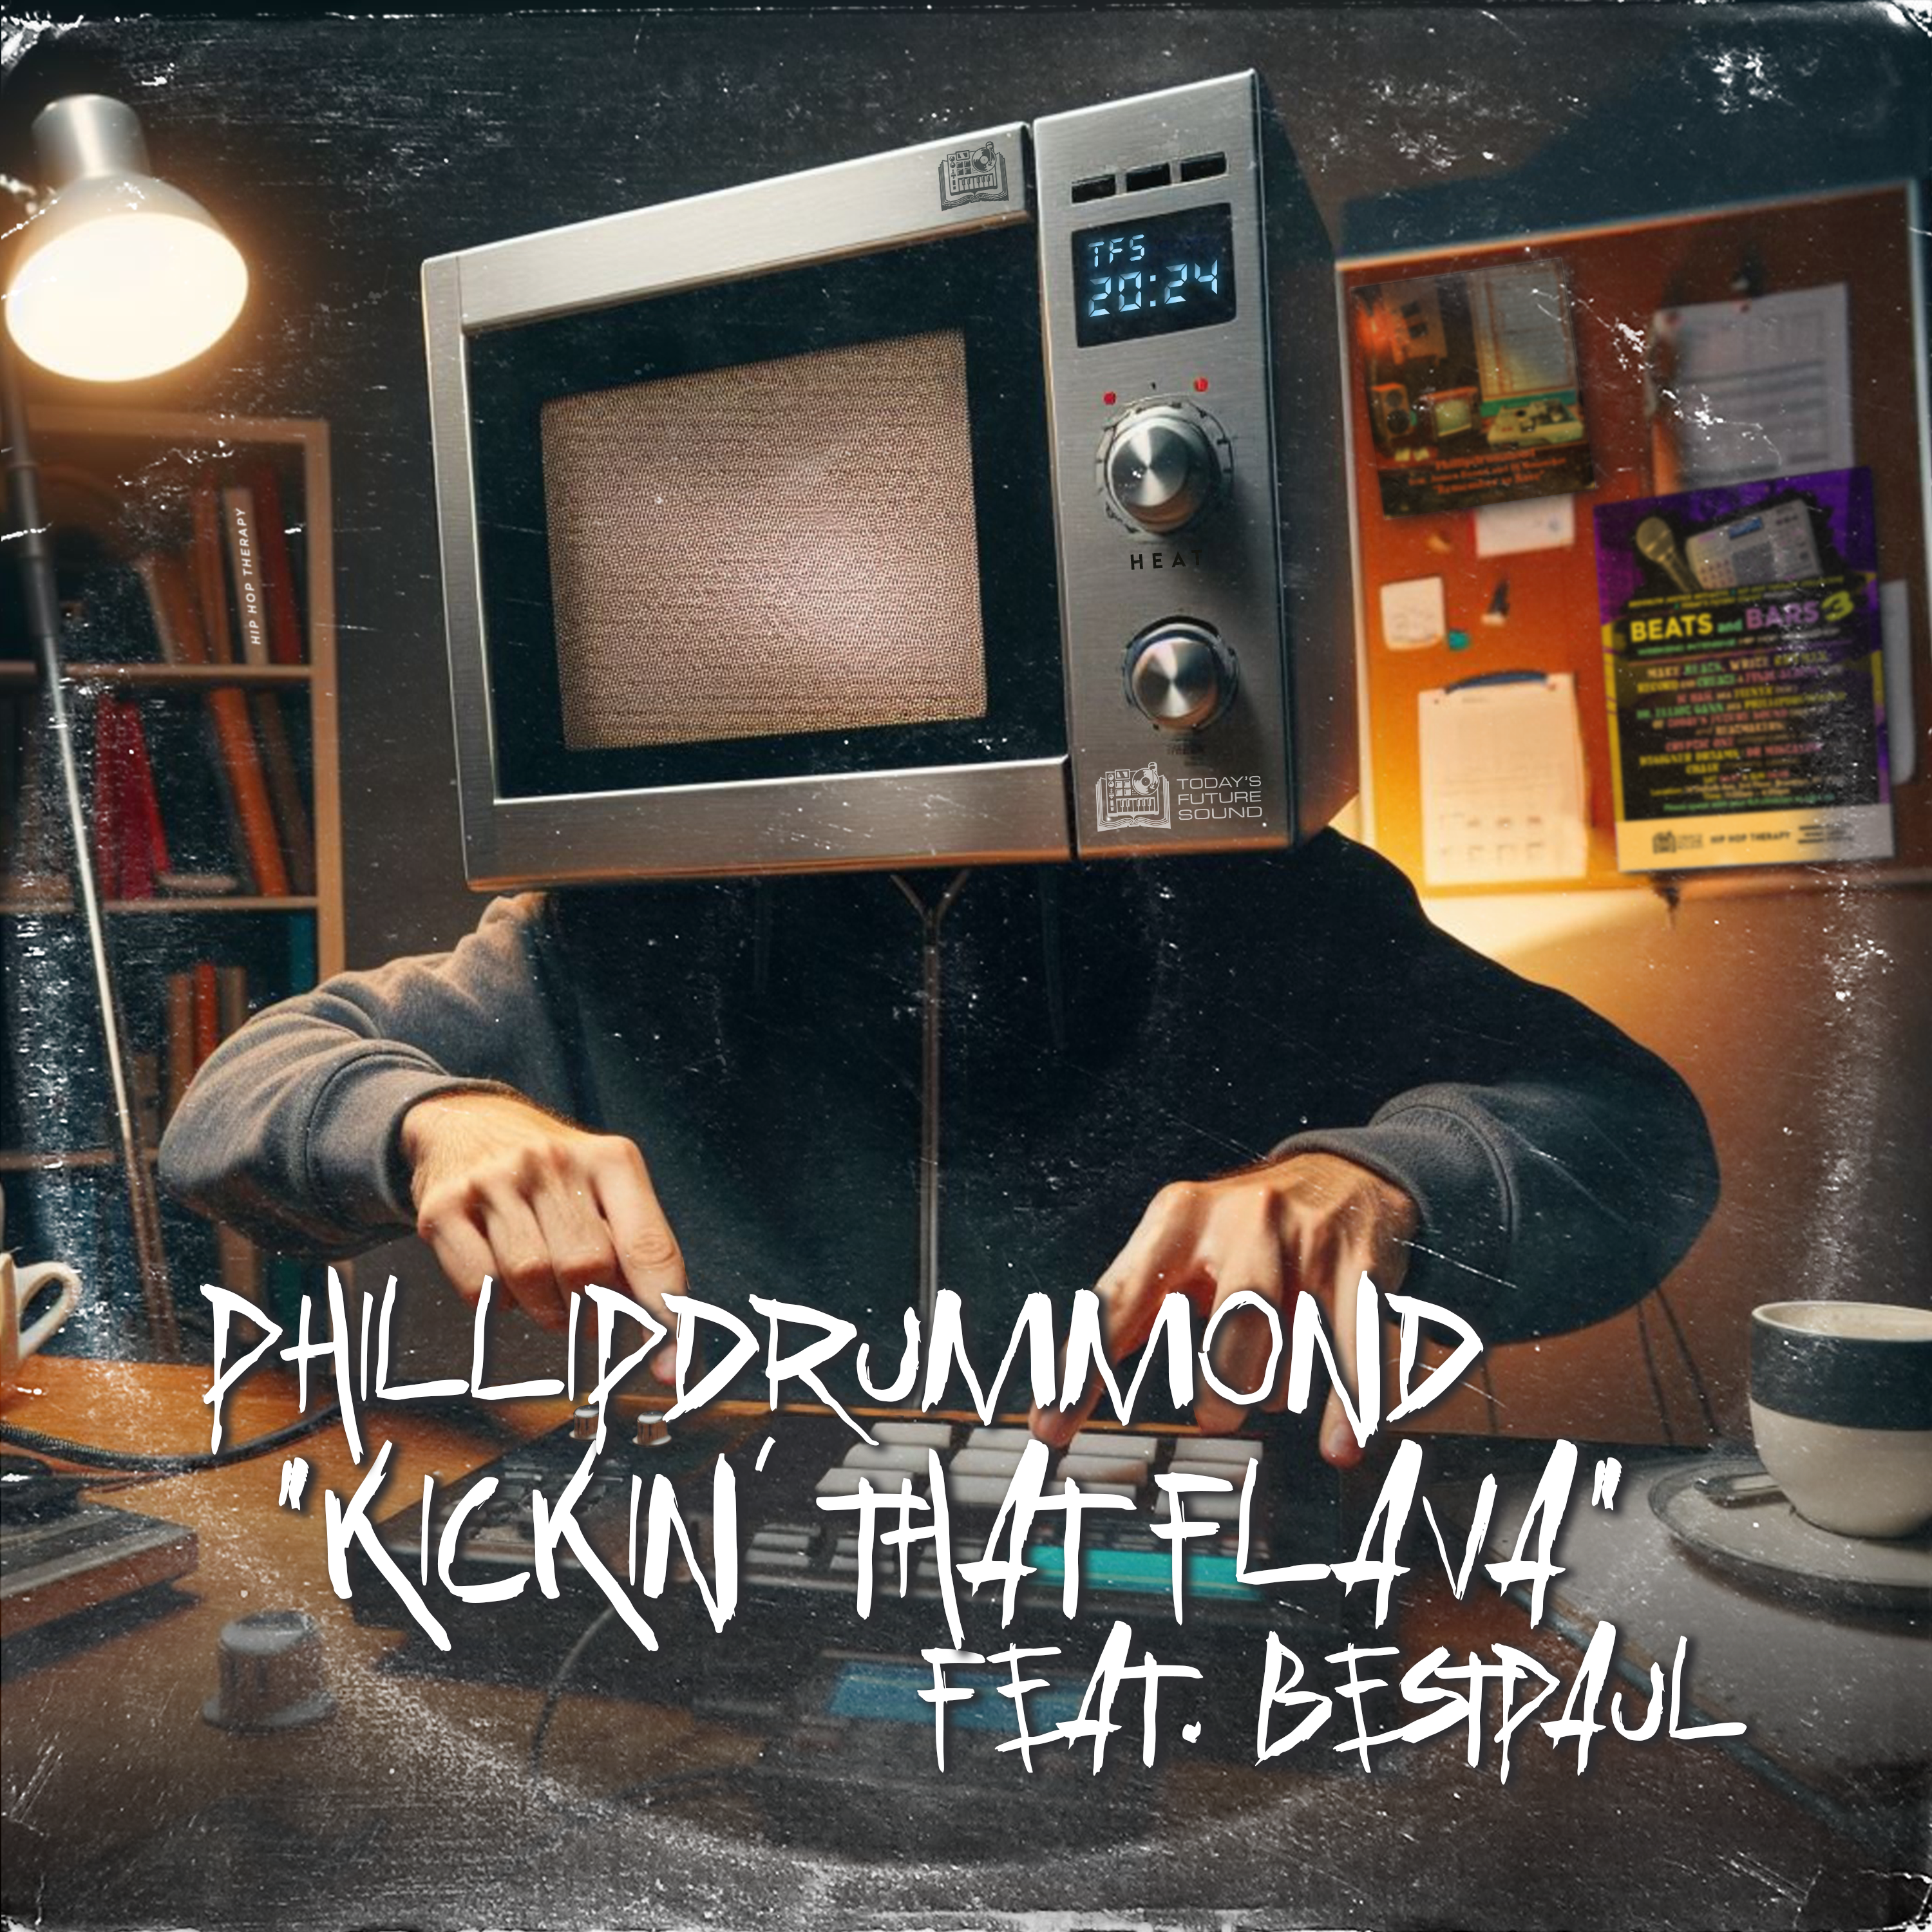 Phillipdrummond & BestPaul – Kickin’ That Flava